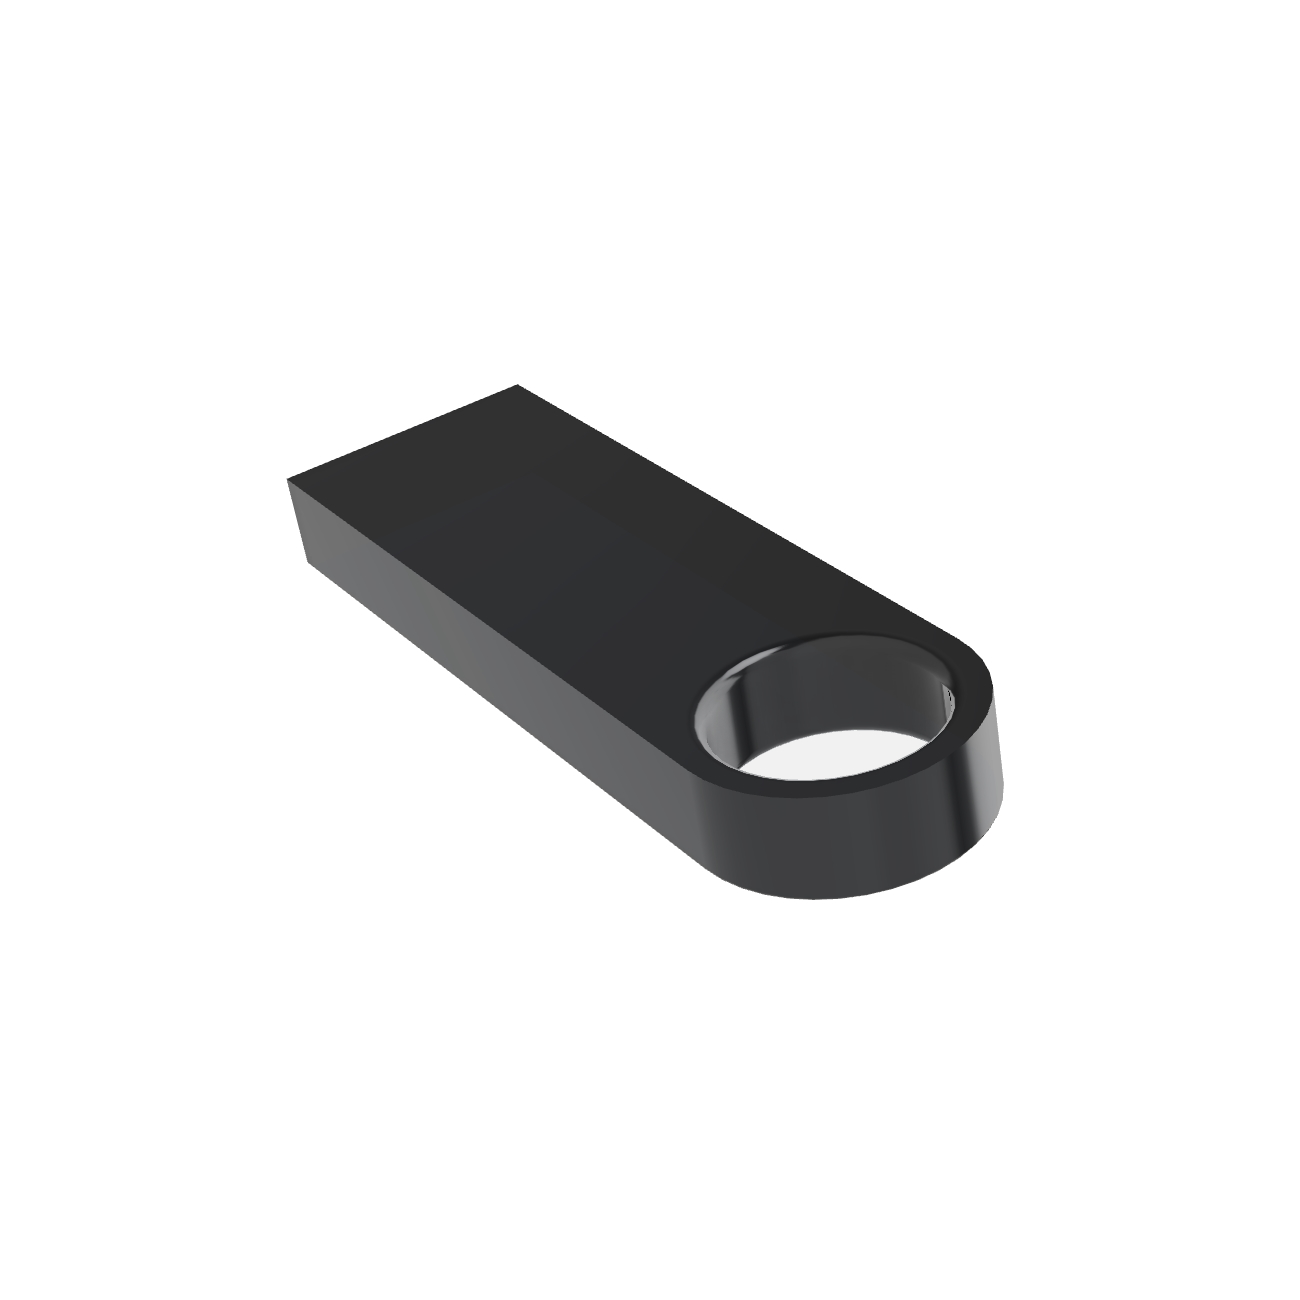 USB GERMANY ® SE09 4 GB) (Schwarz, USB-Stick